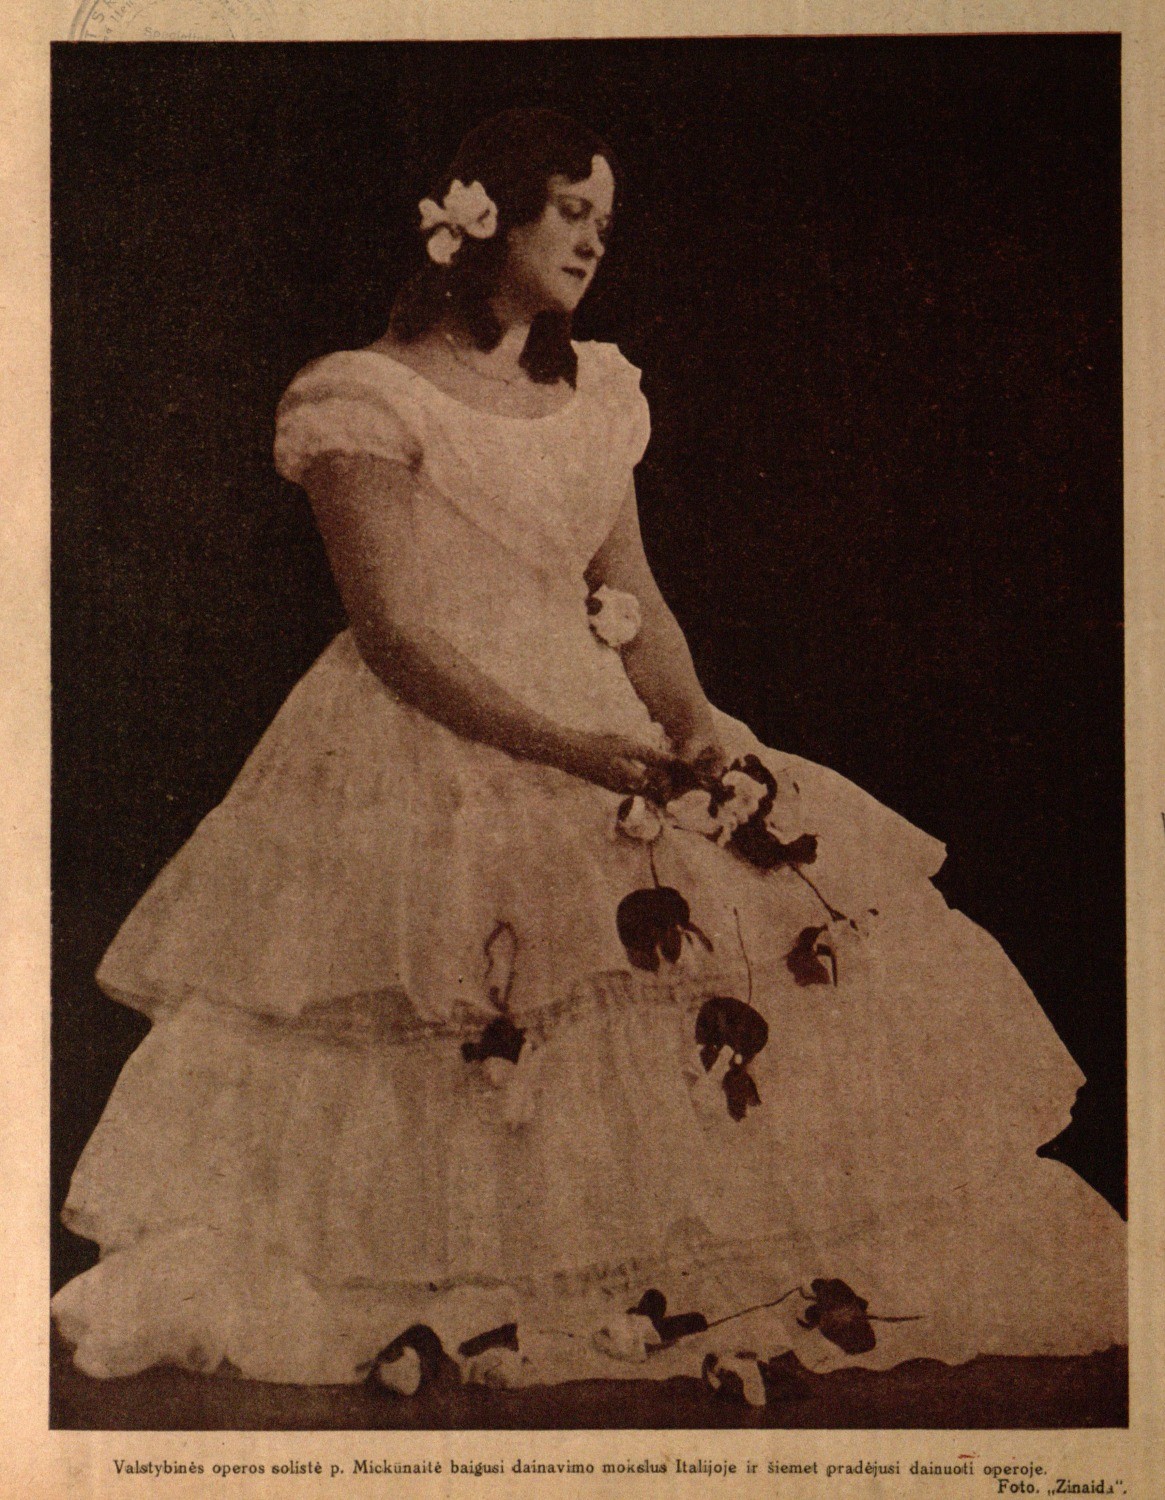 Valstybinės operos solistė p. [Emilija] Mickūnaitė baigusi dainavimo mokslus Italijoje ir šiemet pradėjusi dainuoti operoje: Foto Zinaida // Naujas žodis. – 1932, Nr. 4, p. 61.